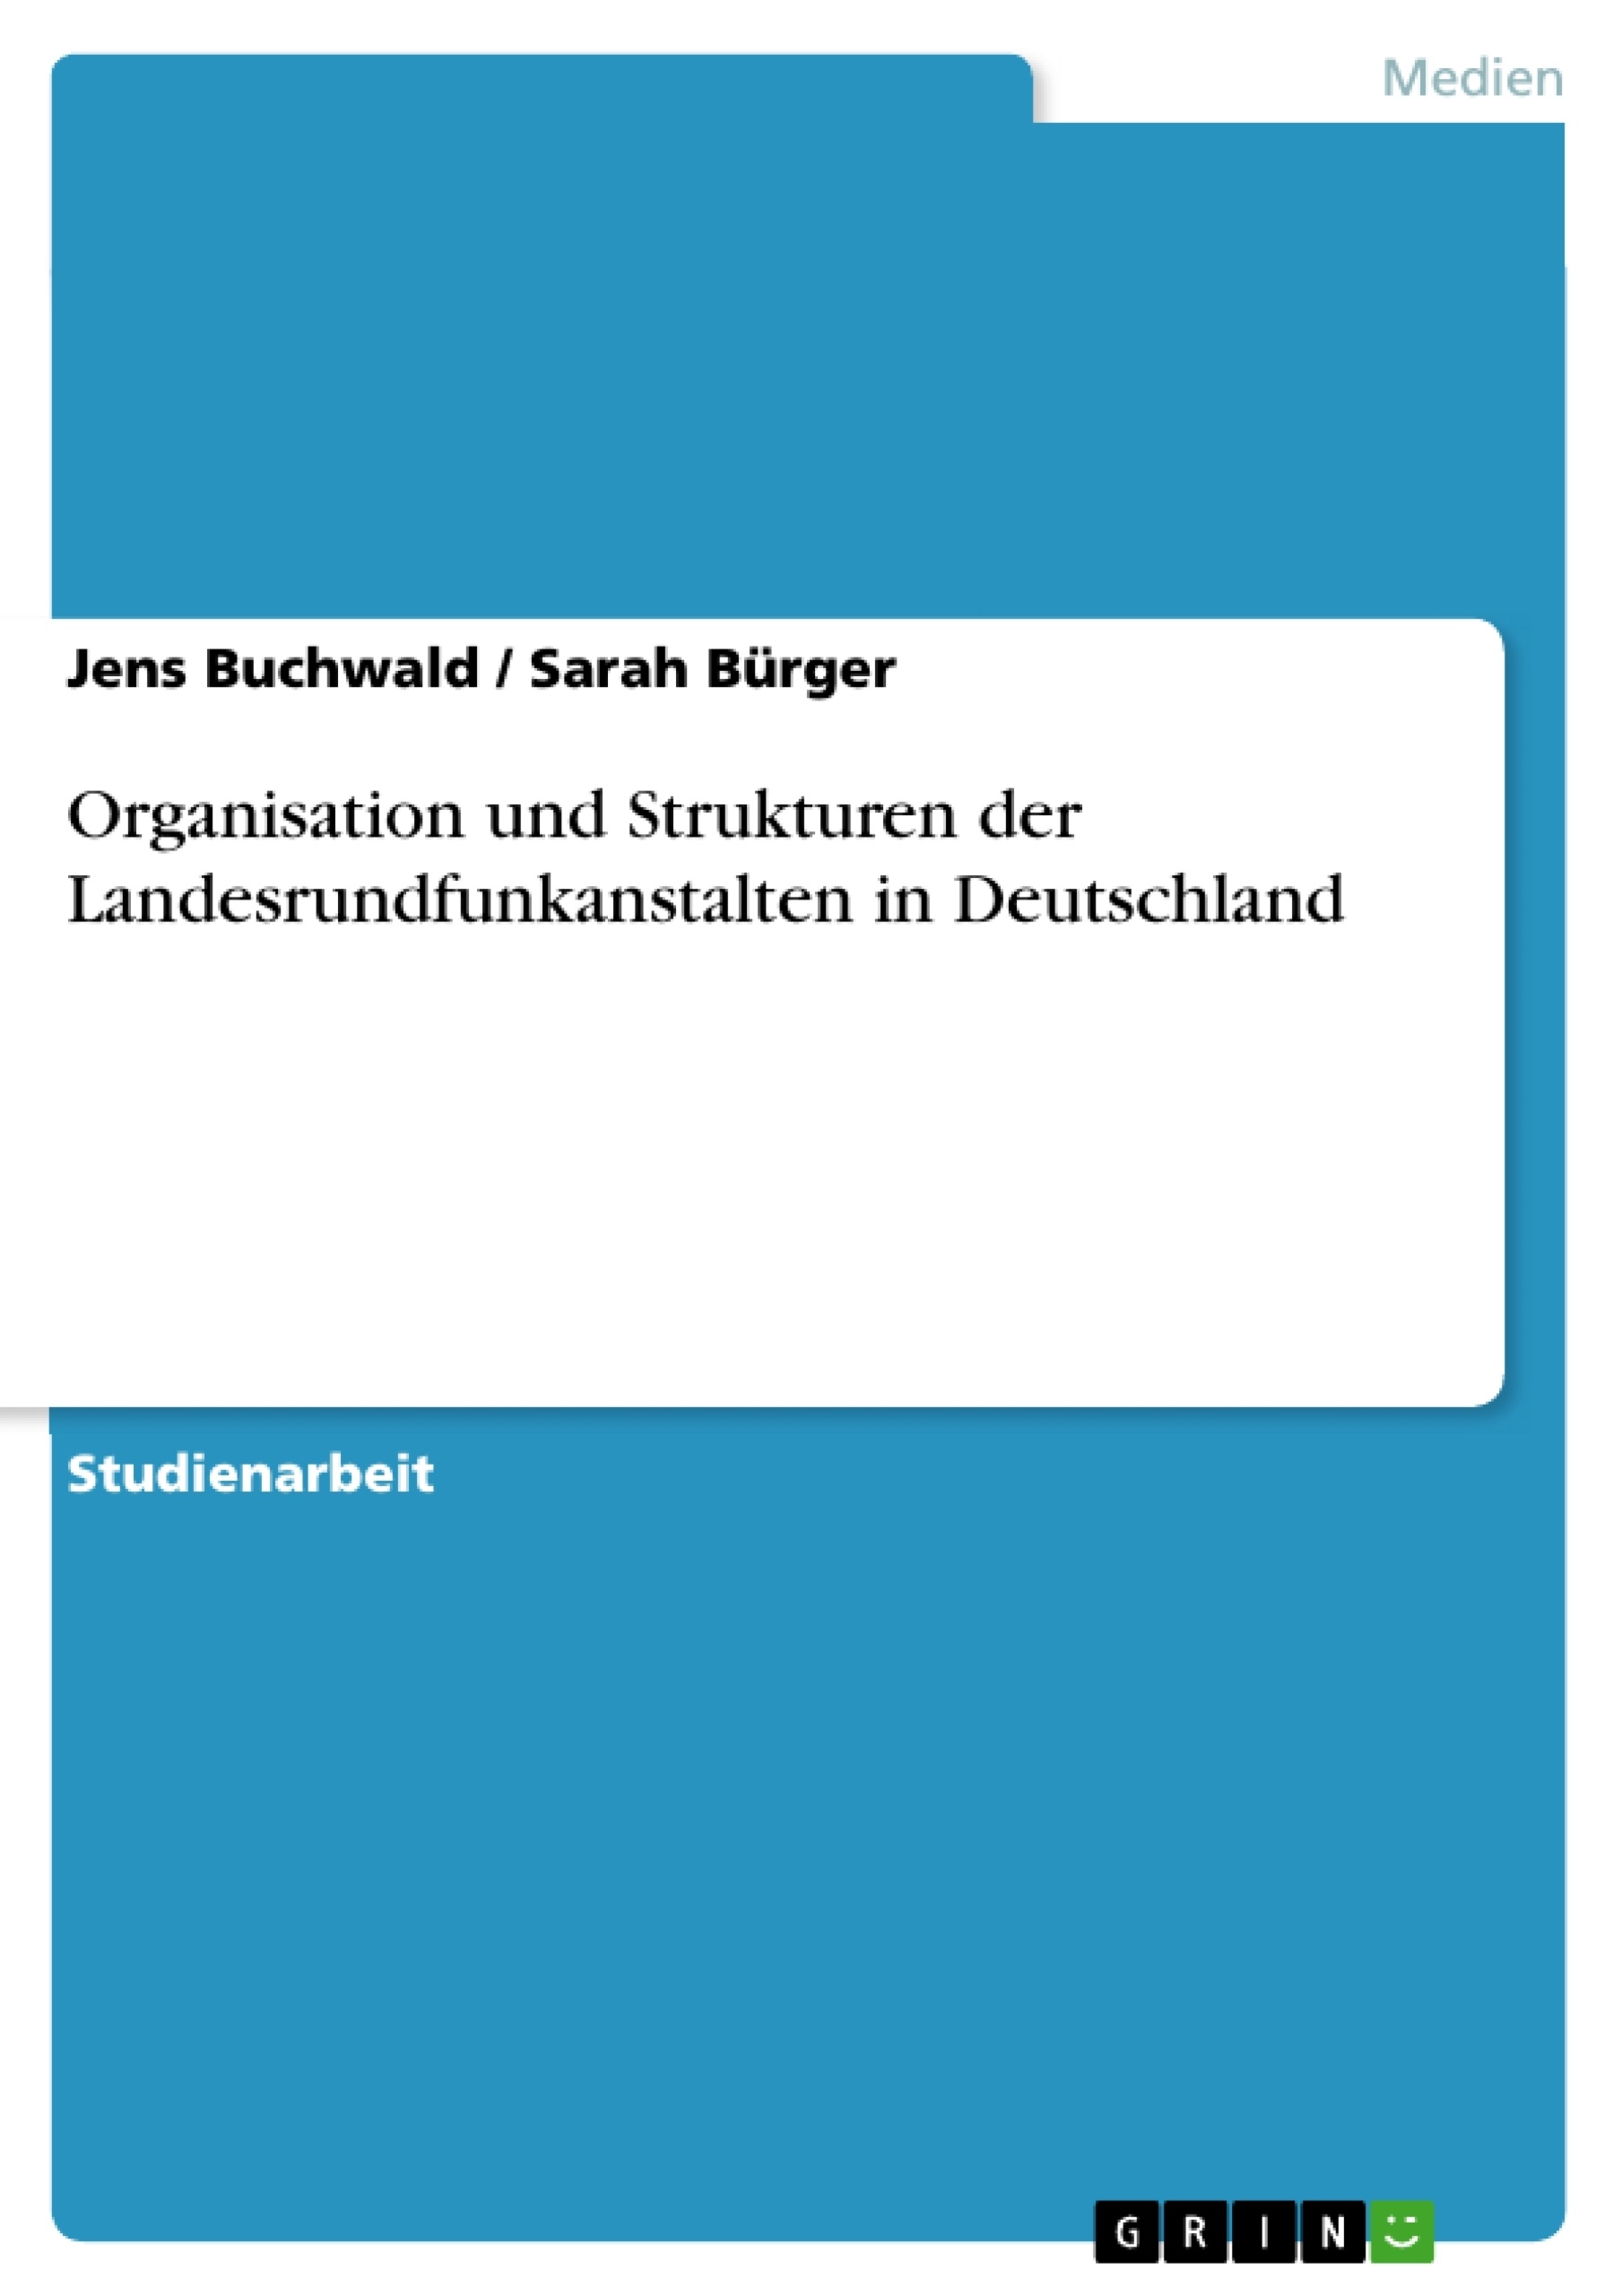 Title: Organisation und Strukturen der Landesrundfunkanstalten in Deutschland